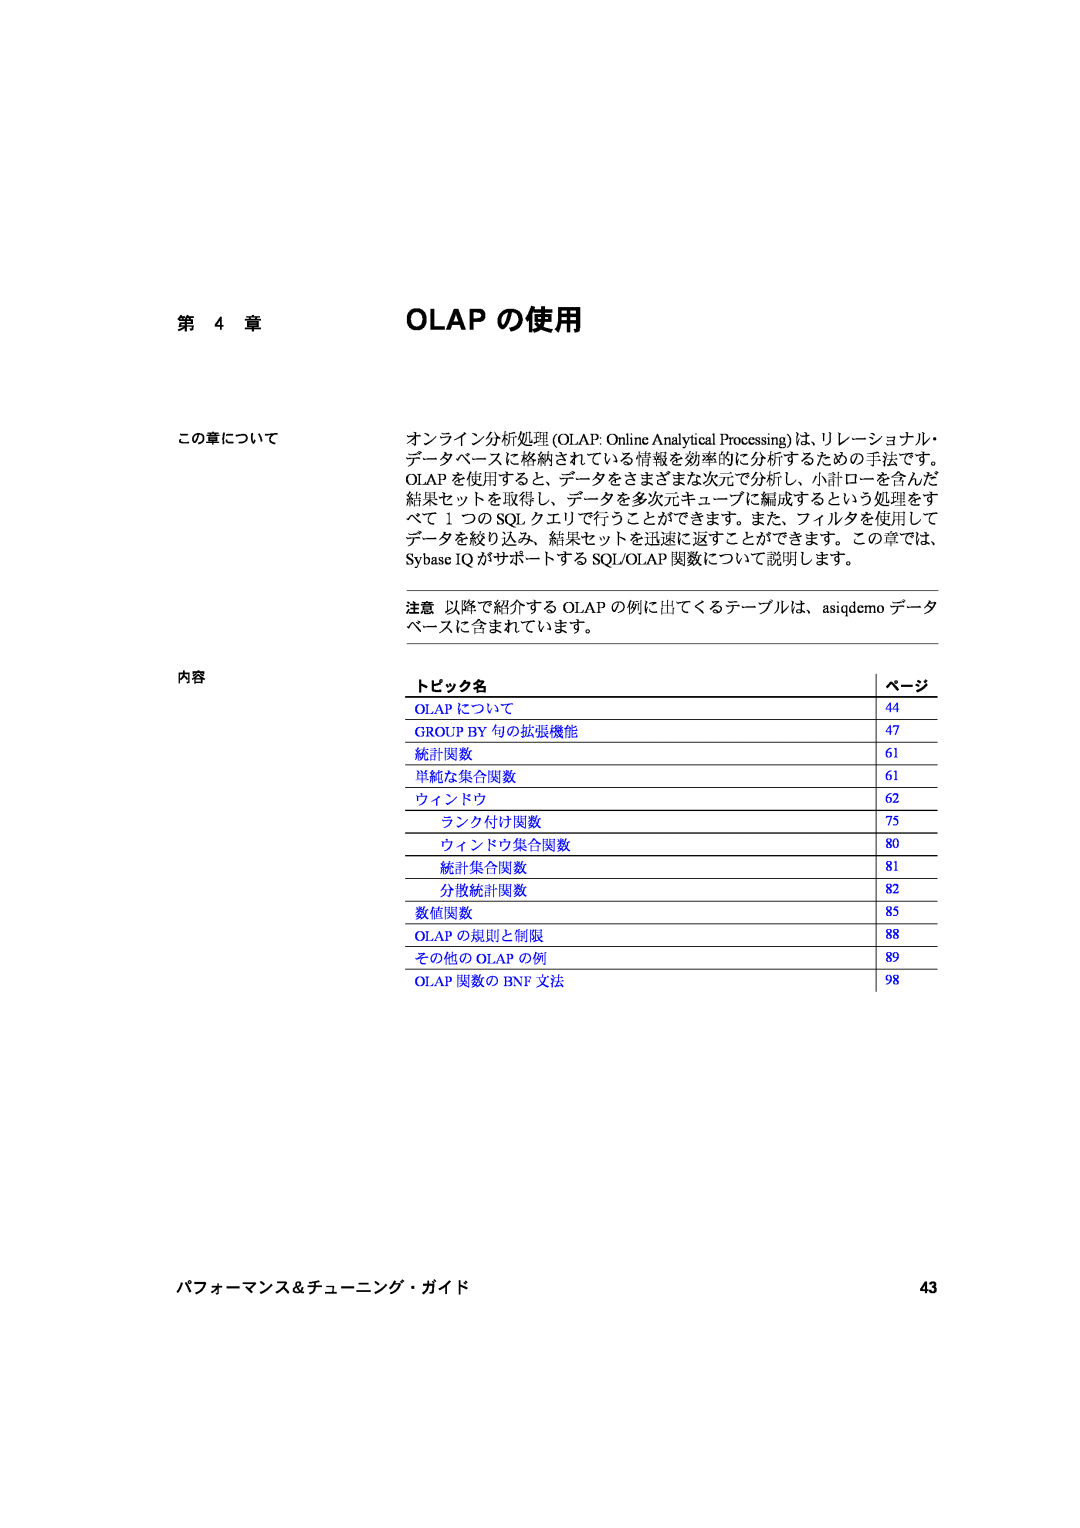 Sybase 12.7 manual 第 4 章, Olap の使用, パフォーマンス＆チューニング・ガイド 